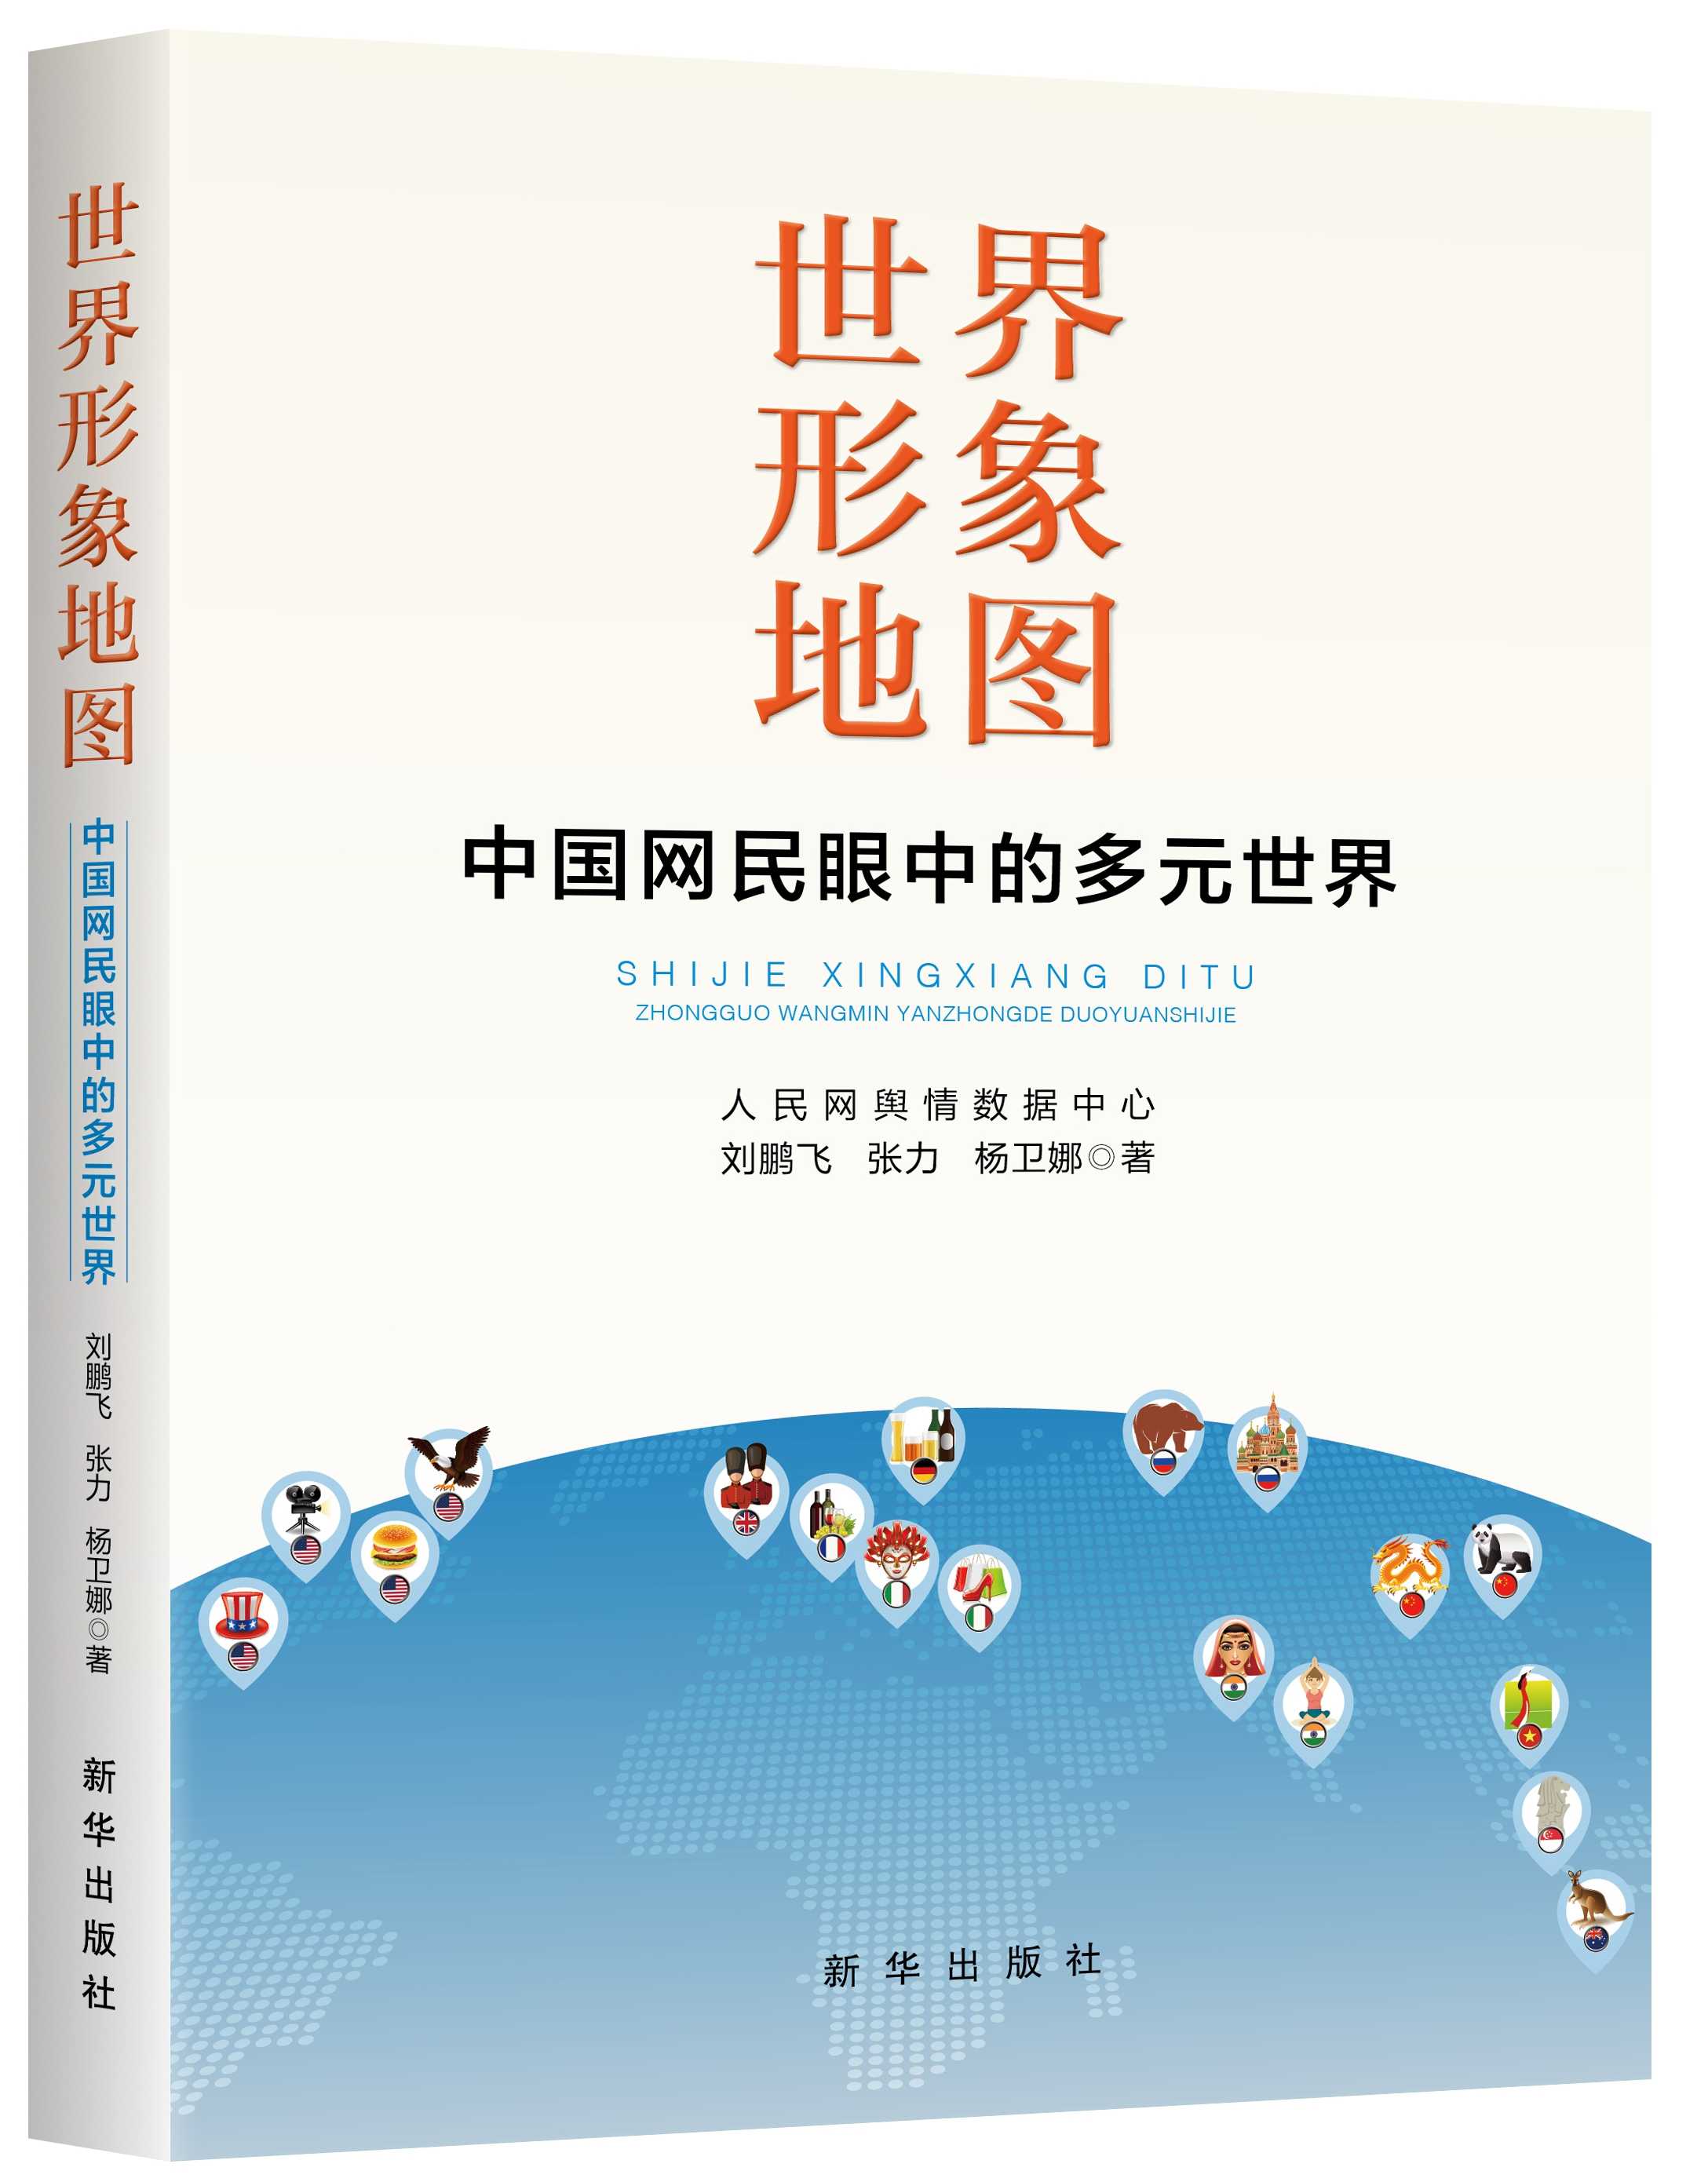 《世界形象地图 ——中国网民眼中的多元世界》